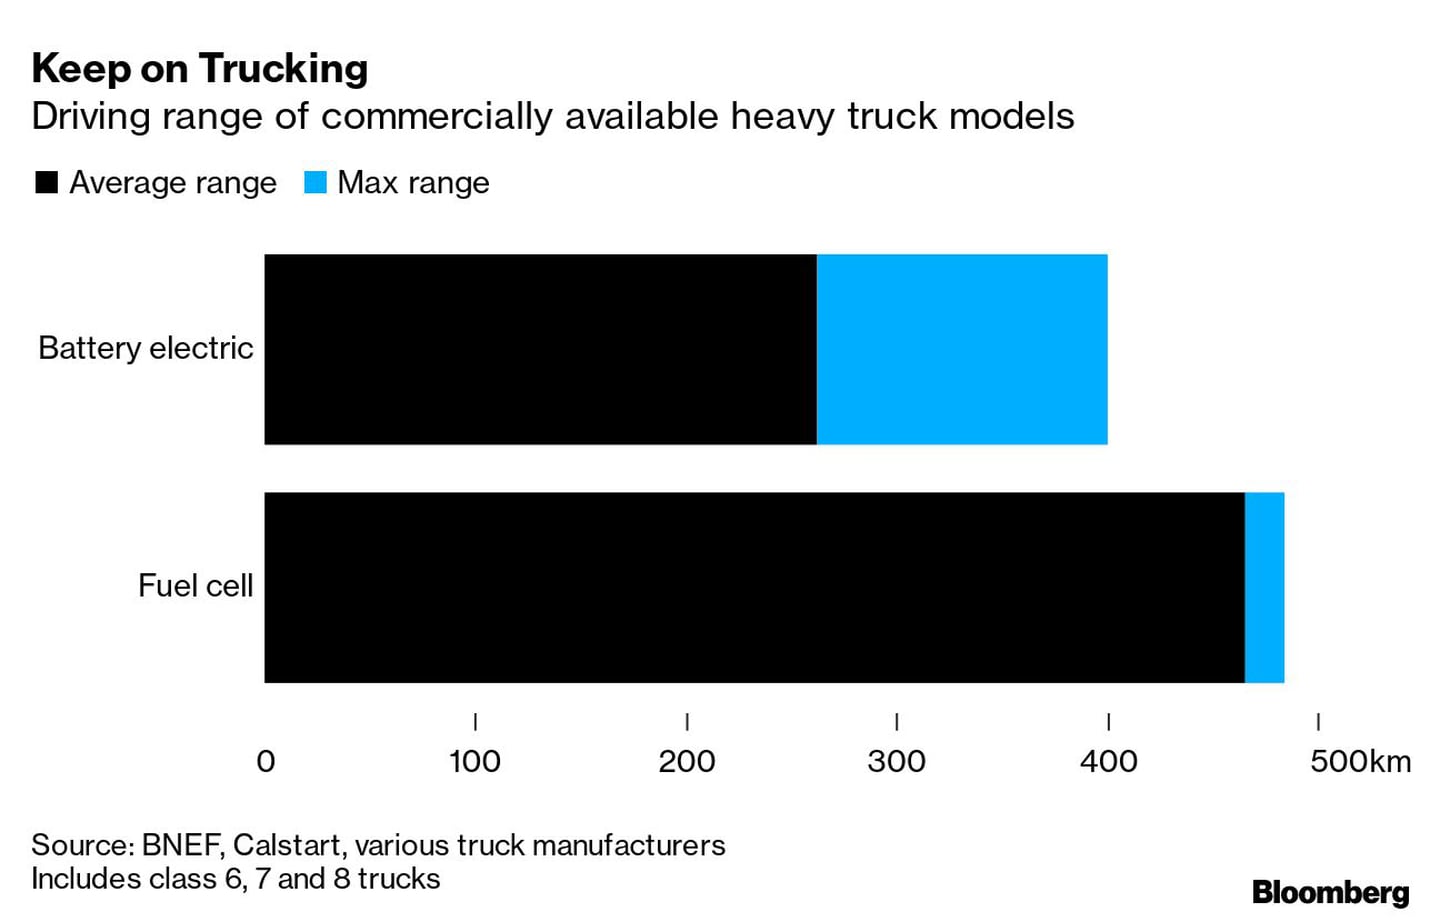 Gama de conducción de modelos de camiones pesados disponibles en el mercadodfd